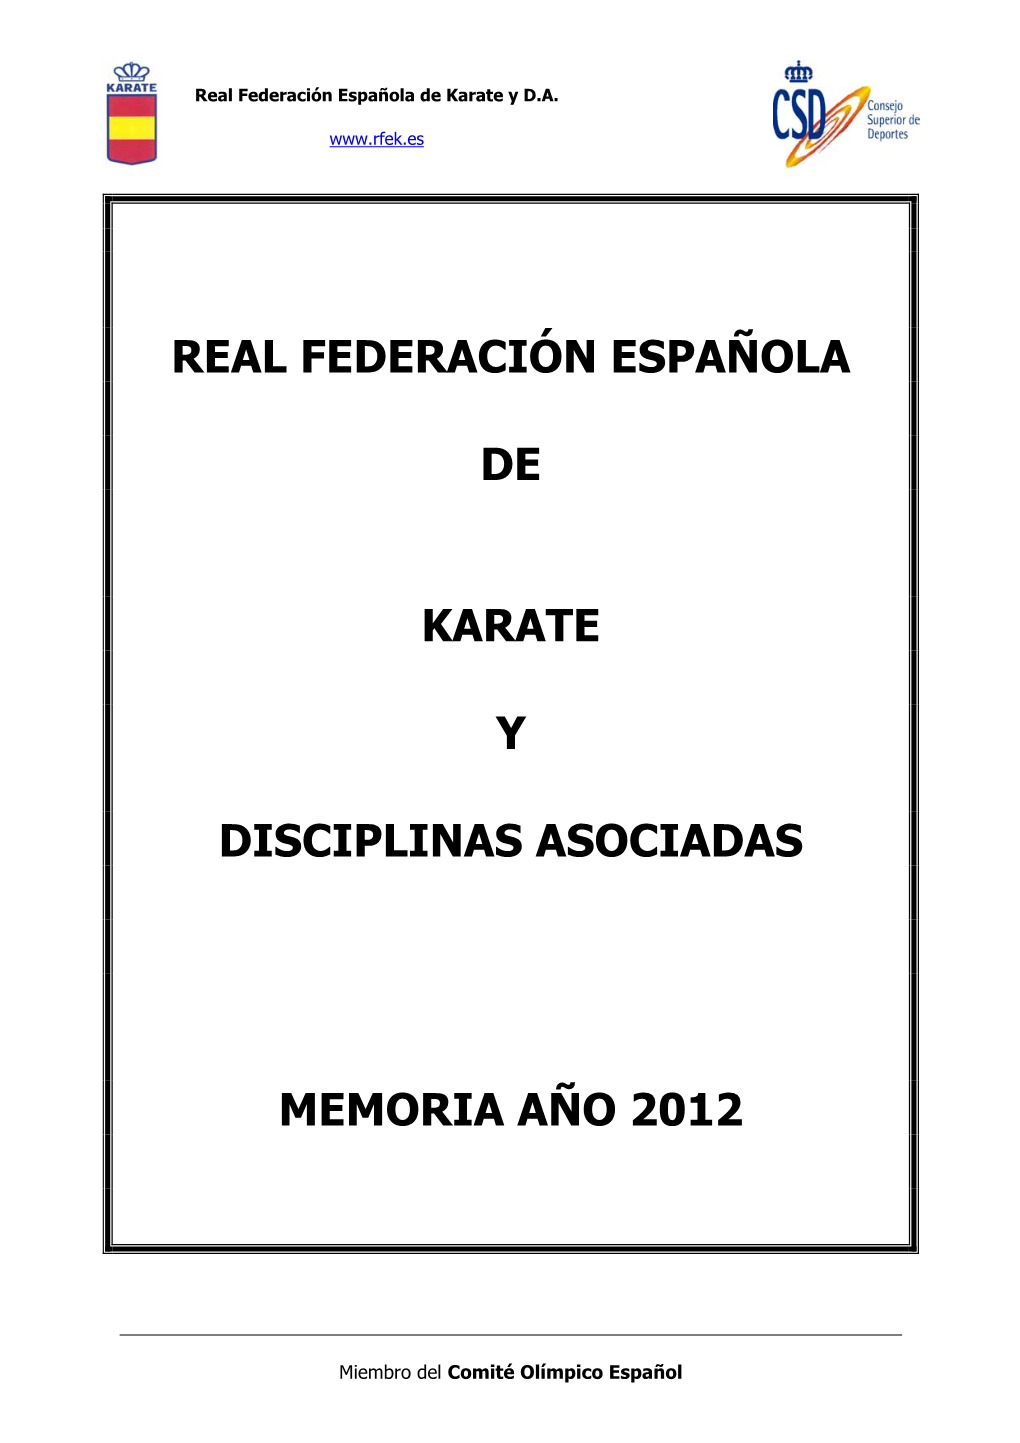 Real Federación Española De Karate Y Disciplinas Asociadas Memoria Año